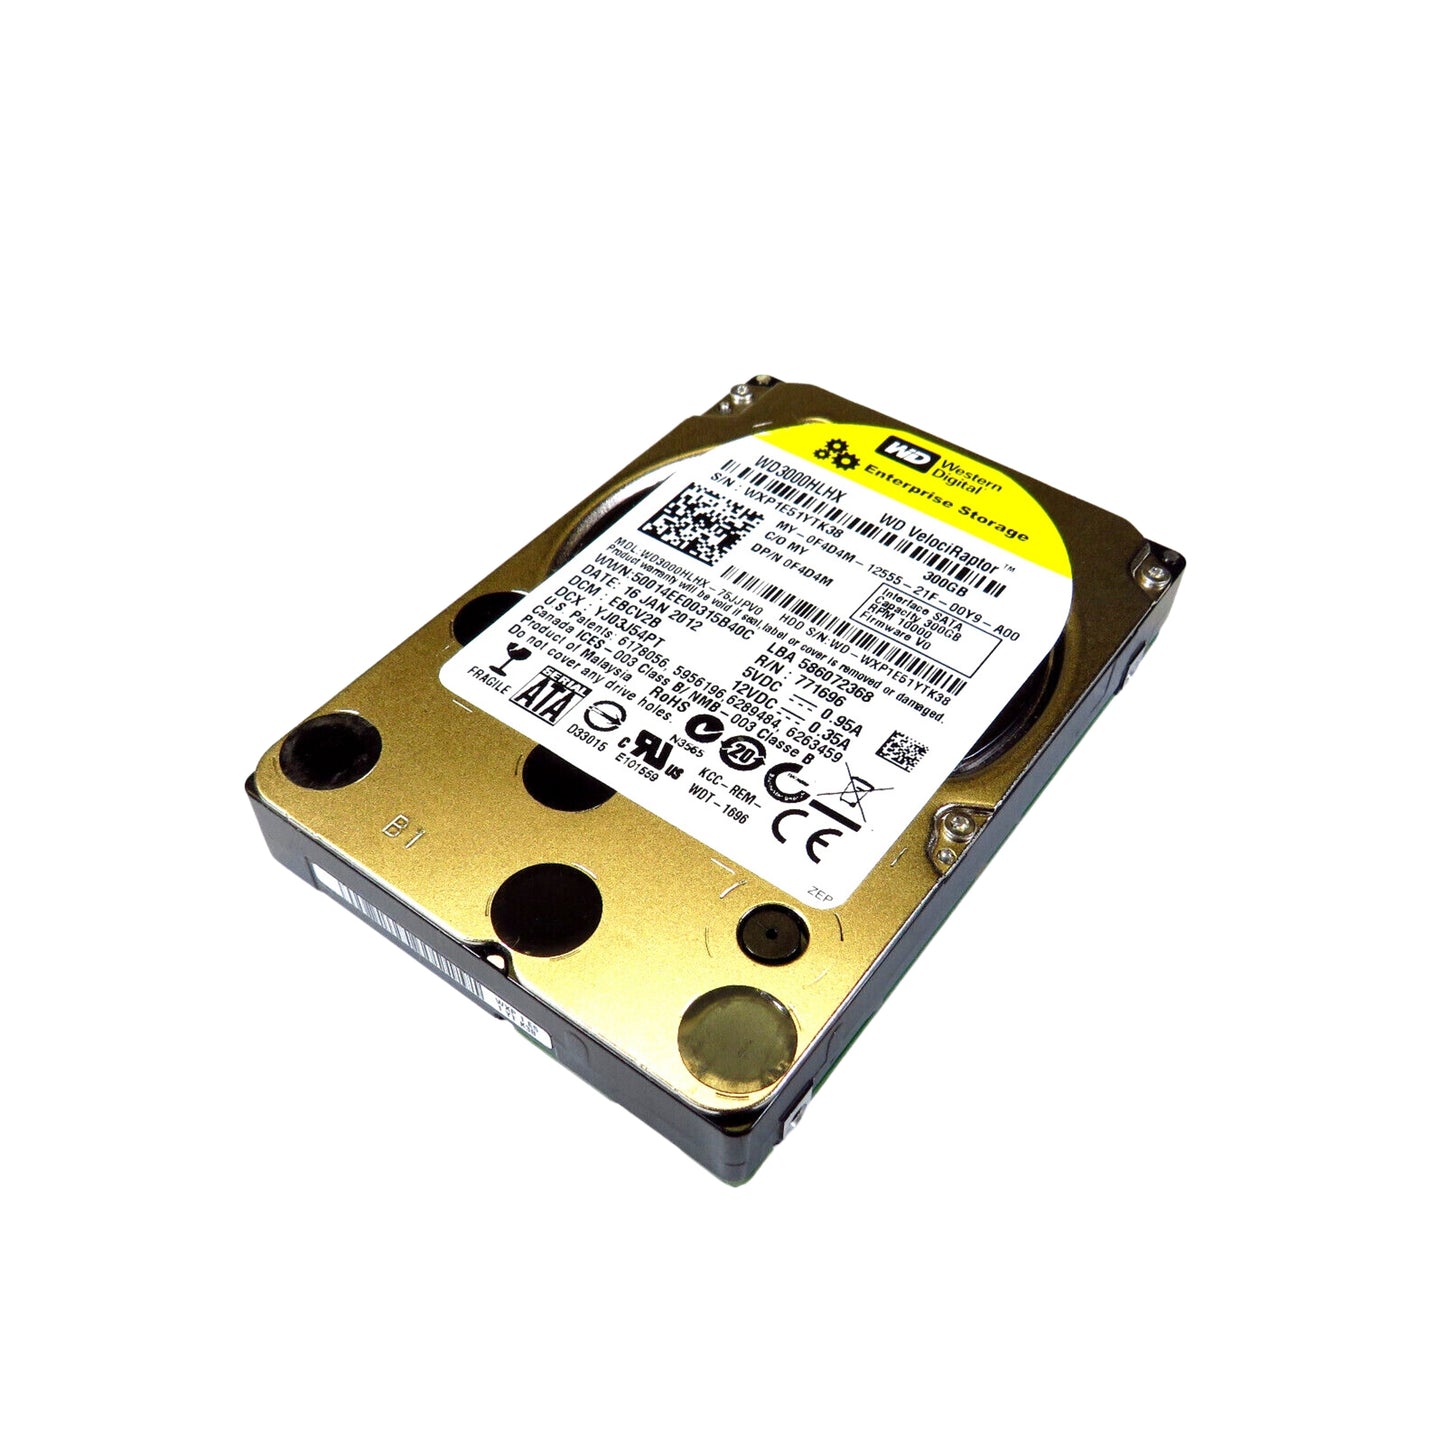 Dell F4D4M 2.5" 300GB 10000RPM SATA III Hard Disk Drive (HDD), Silver (Refurbished)